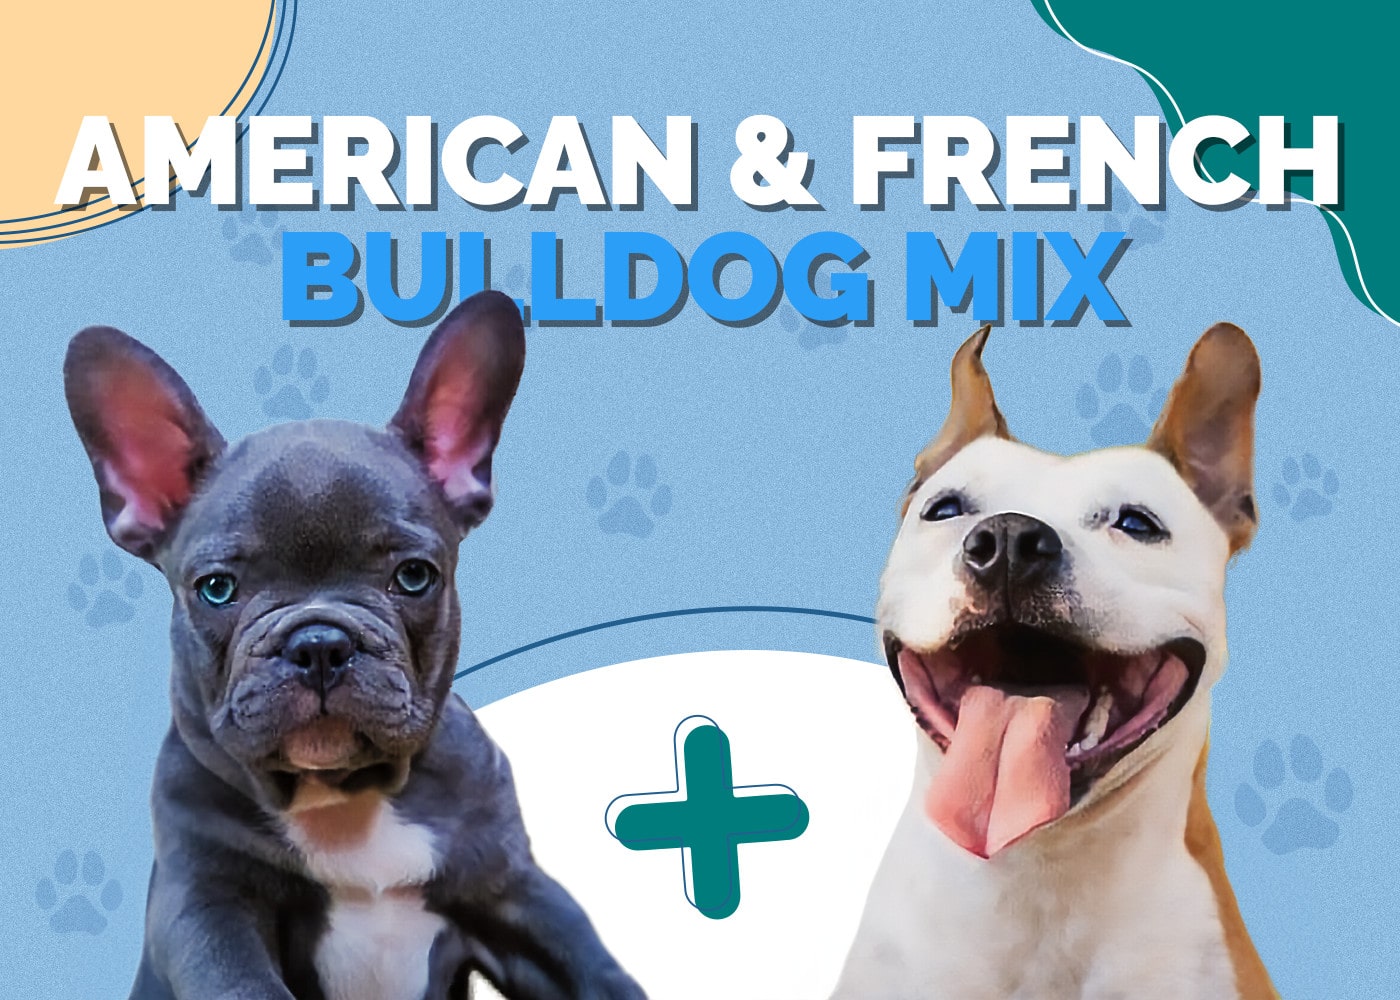 American Bulldog & French Bulldog Mix